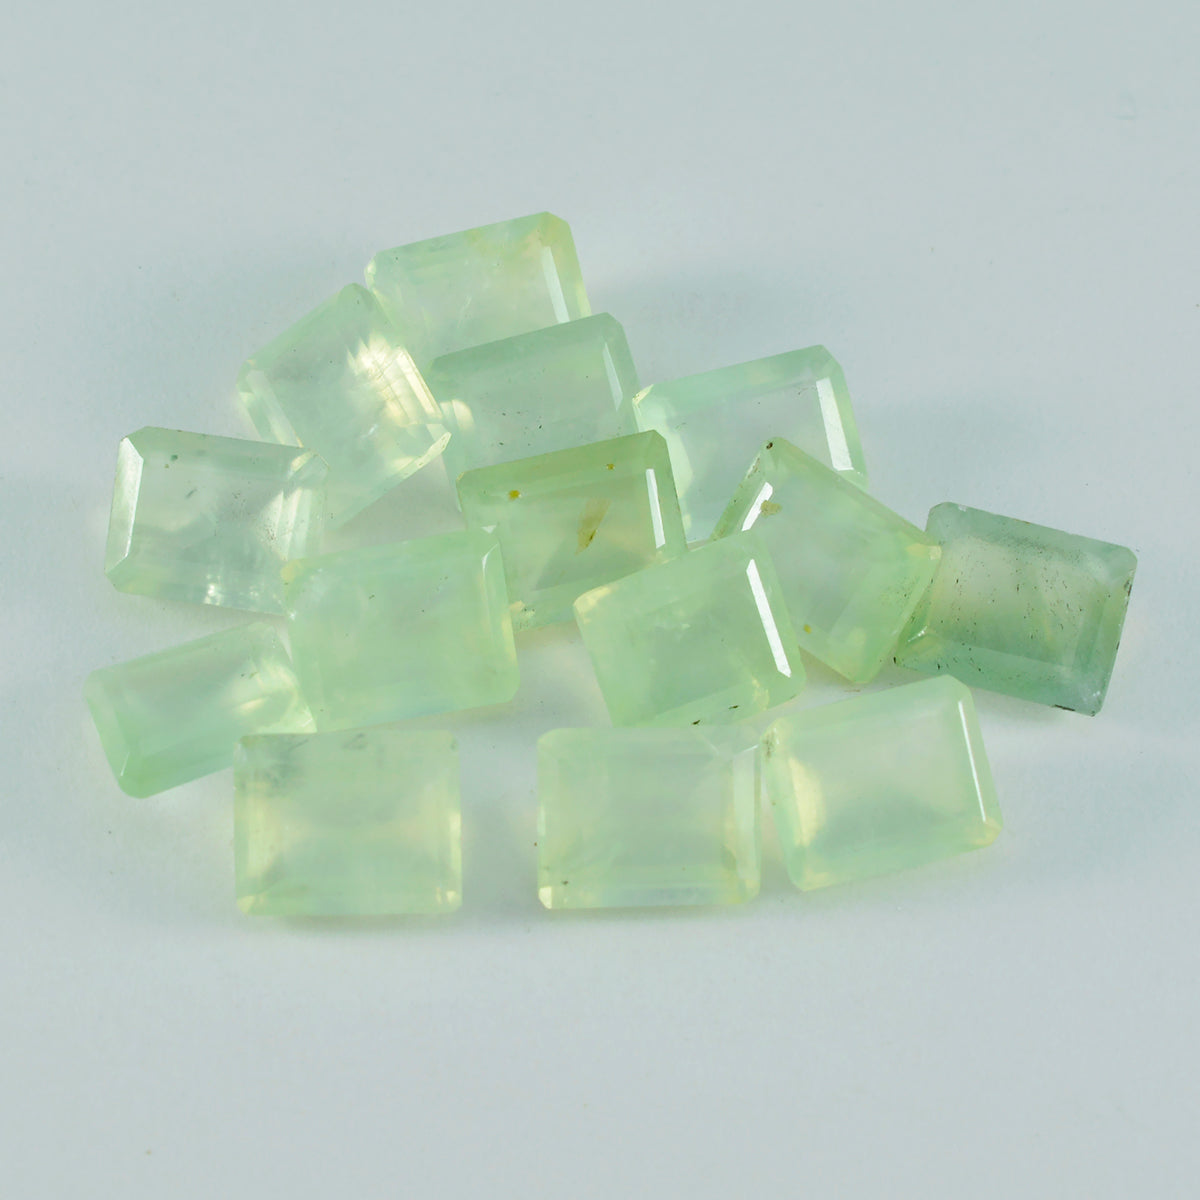 riyogems 1 шт., зеленый пренит, граненый 6x8 мм, восьмиугольная форма, прекрасный качественный свободный камень